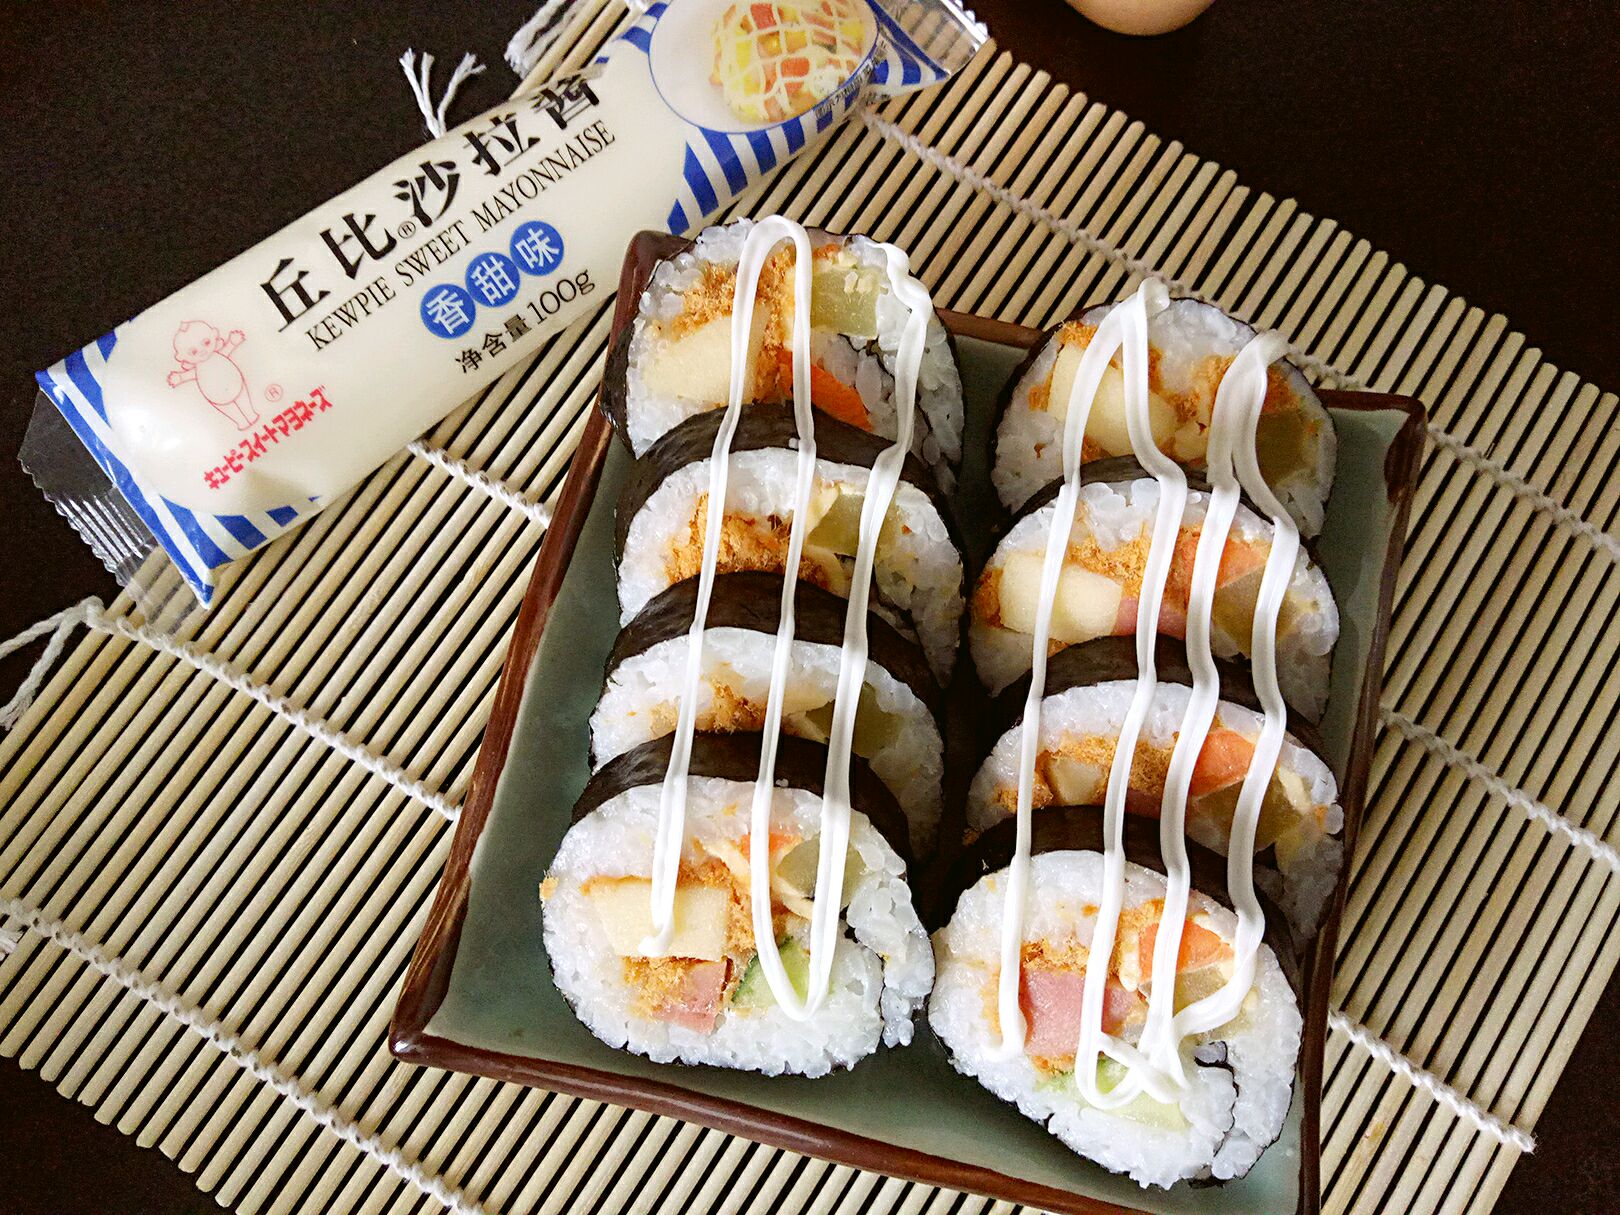 日本料理，鱼子酱蟹棒寿司卷的顶端 库存图片. 图片 包括有 可口, 蛋白质, 食物, 少见, 营养, 膳食 - 166550637